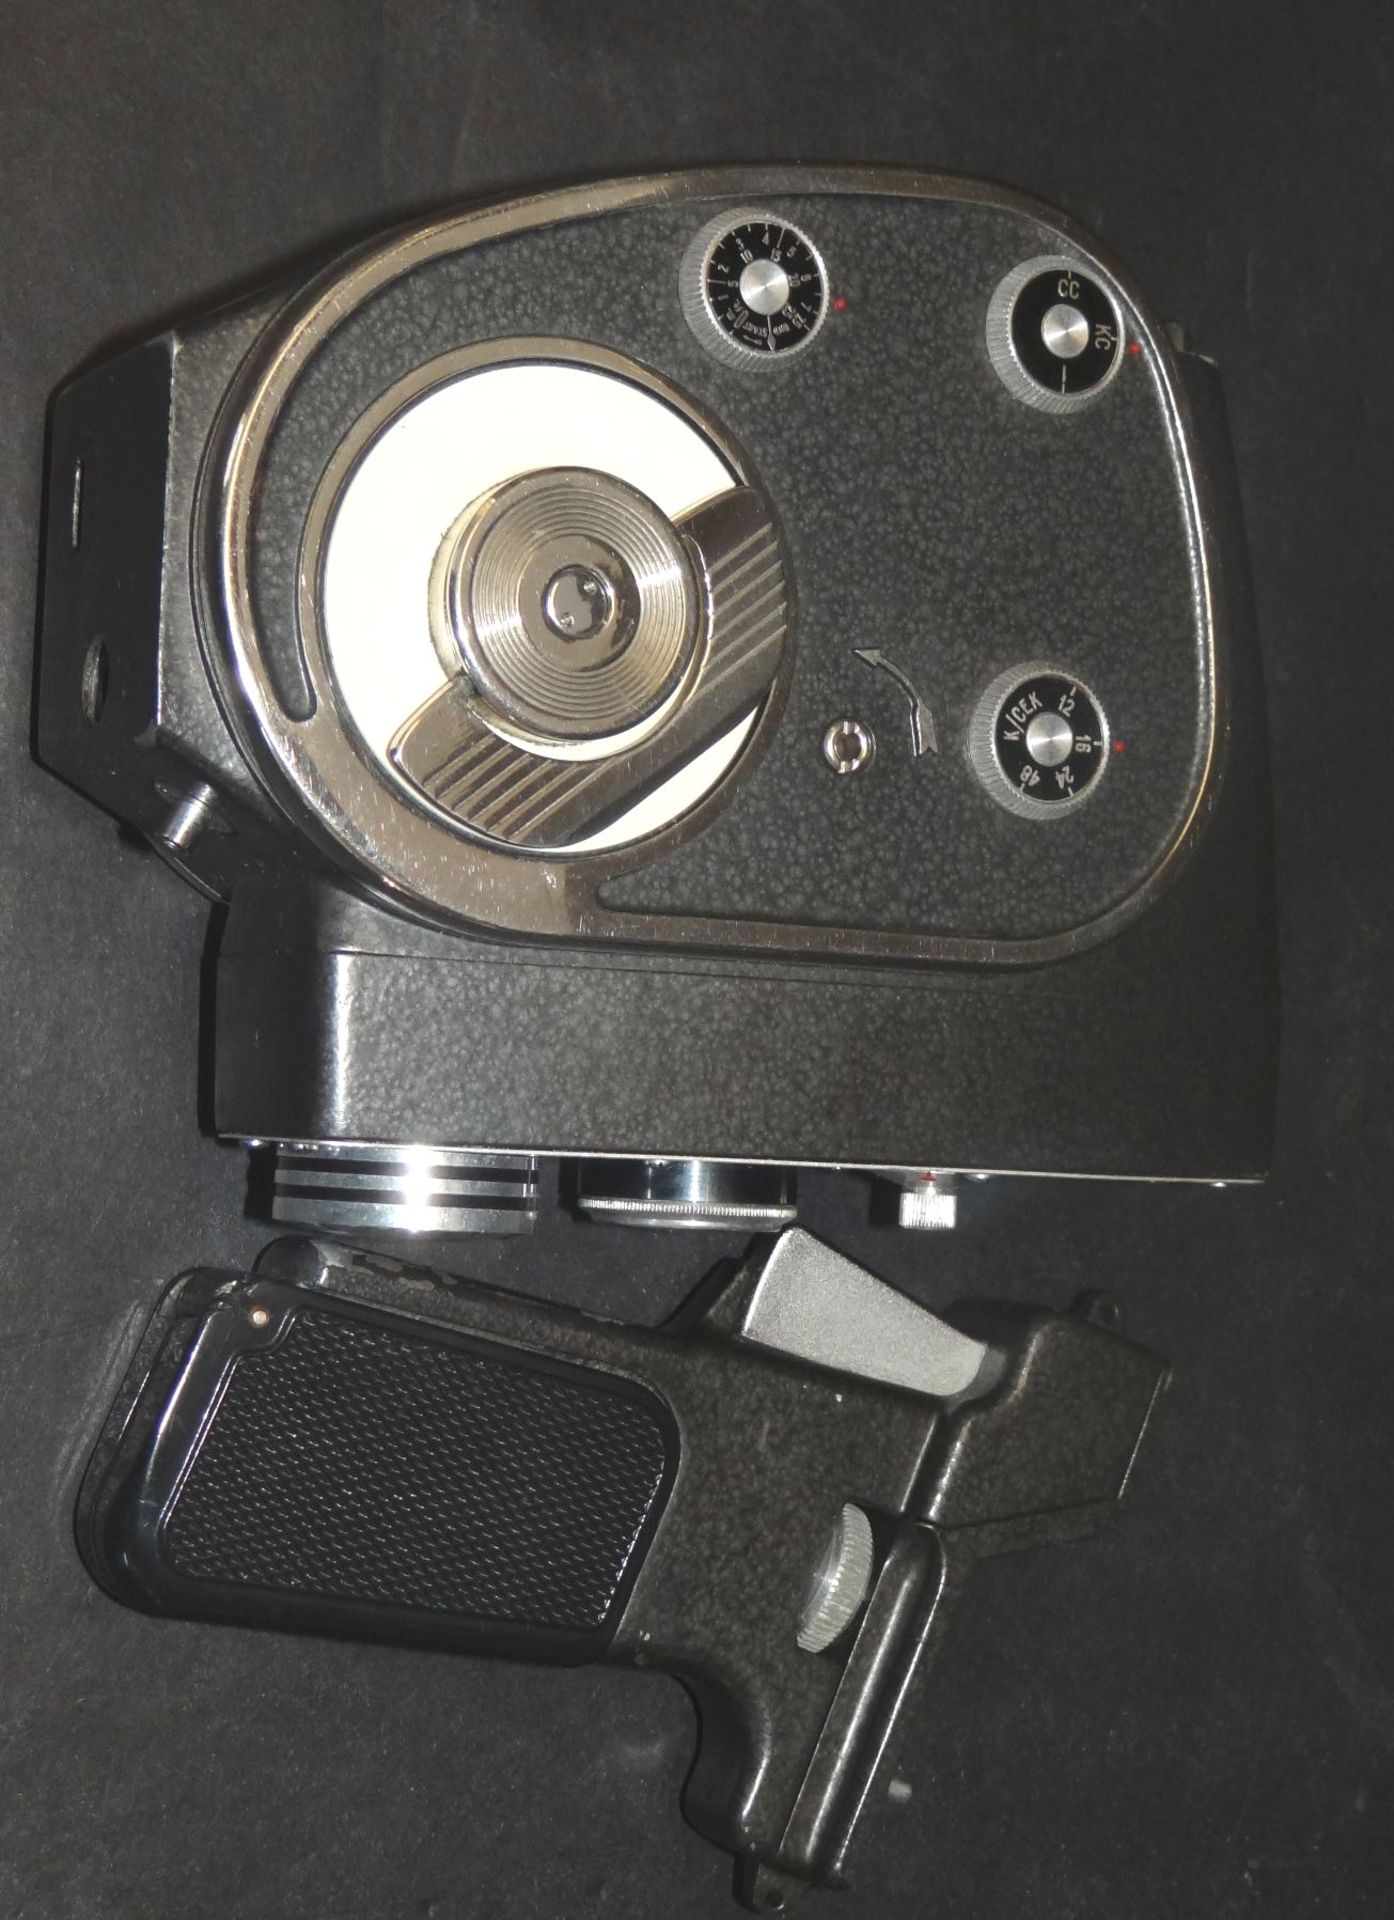 Filmkamera "Quarz M" 8 mm in orig. Tasche mit Garantieschein von 1969, Milano